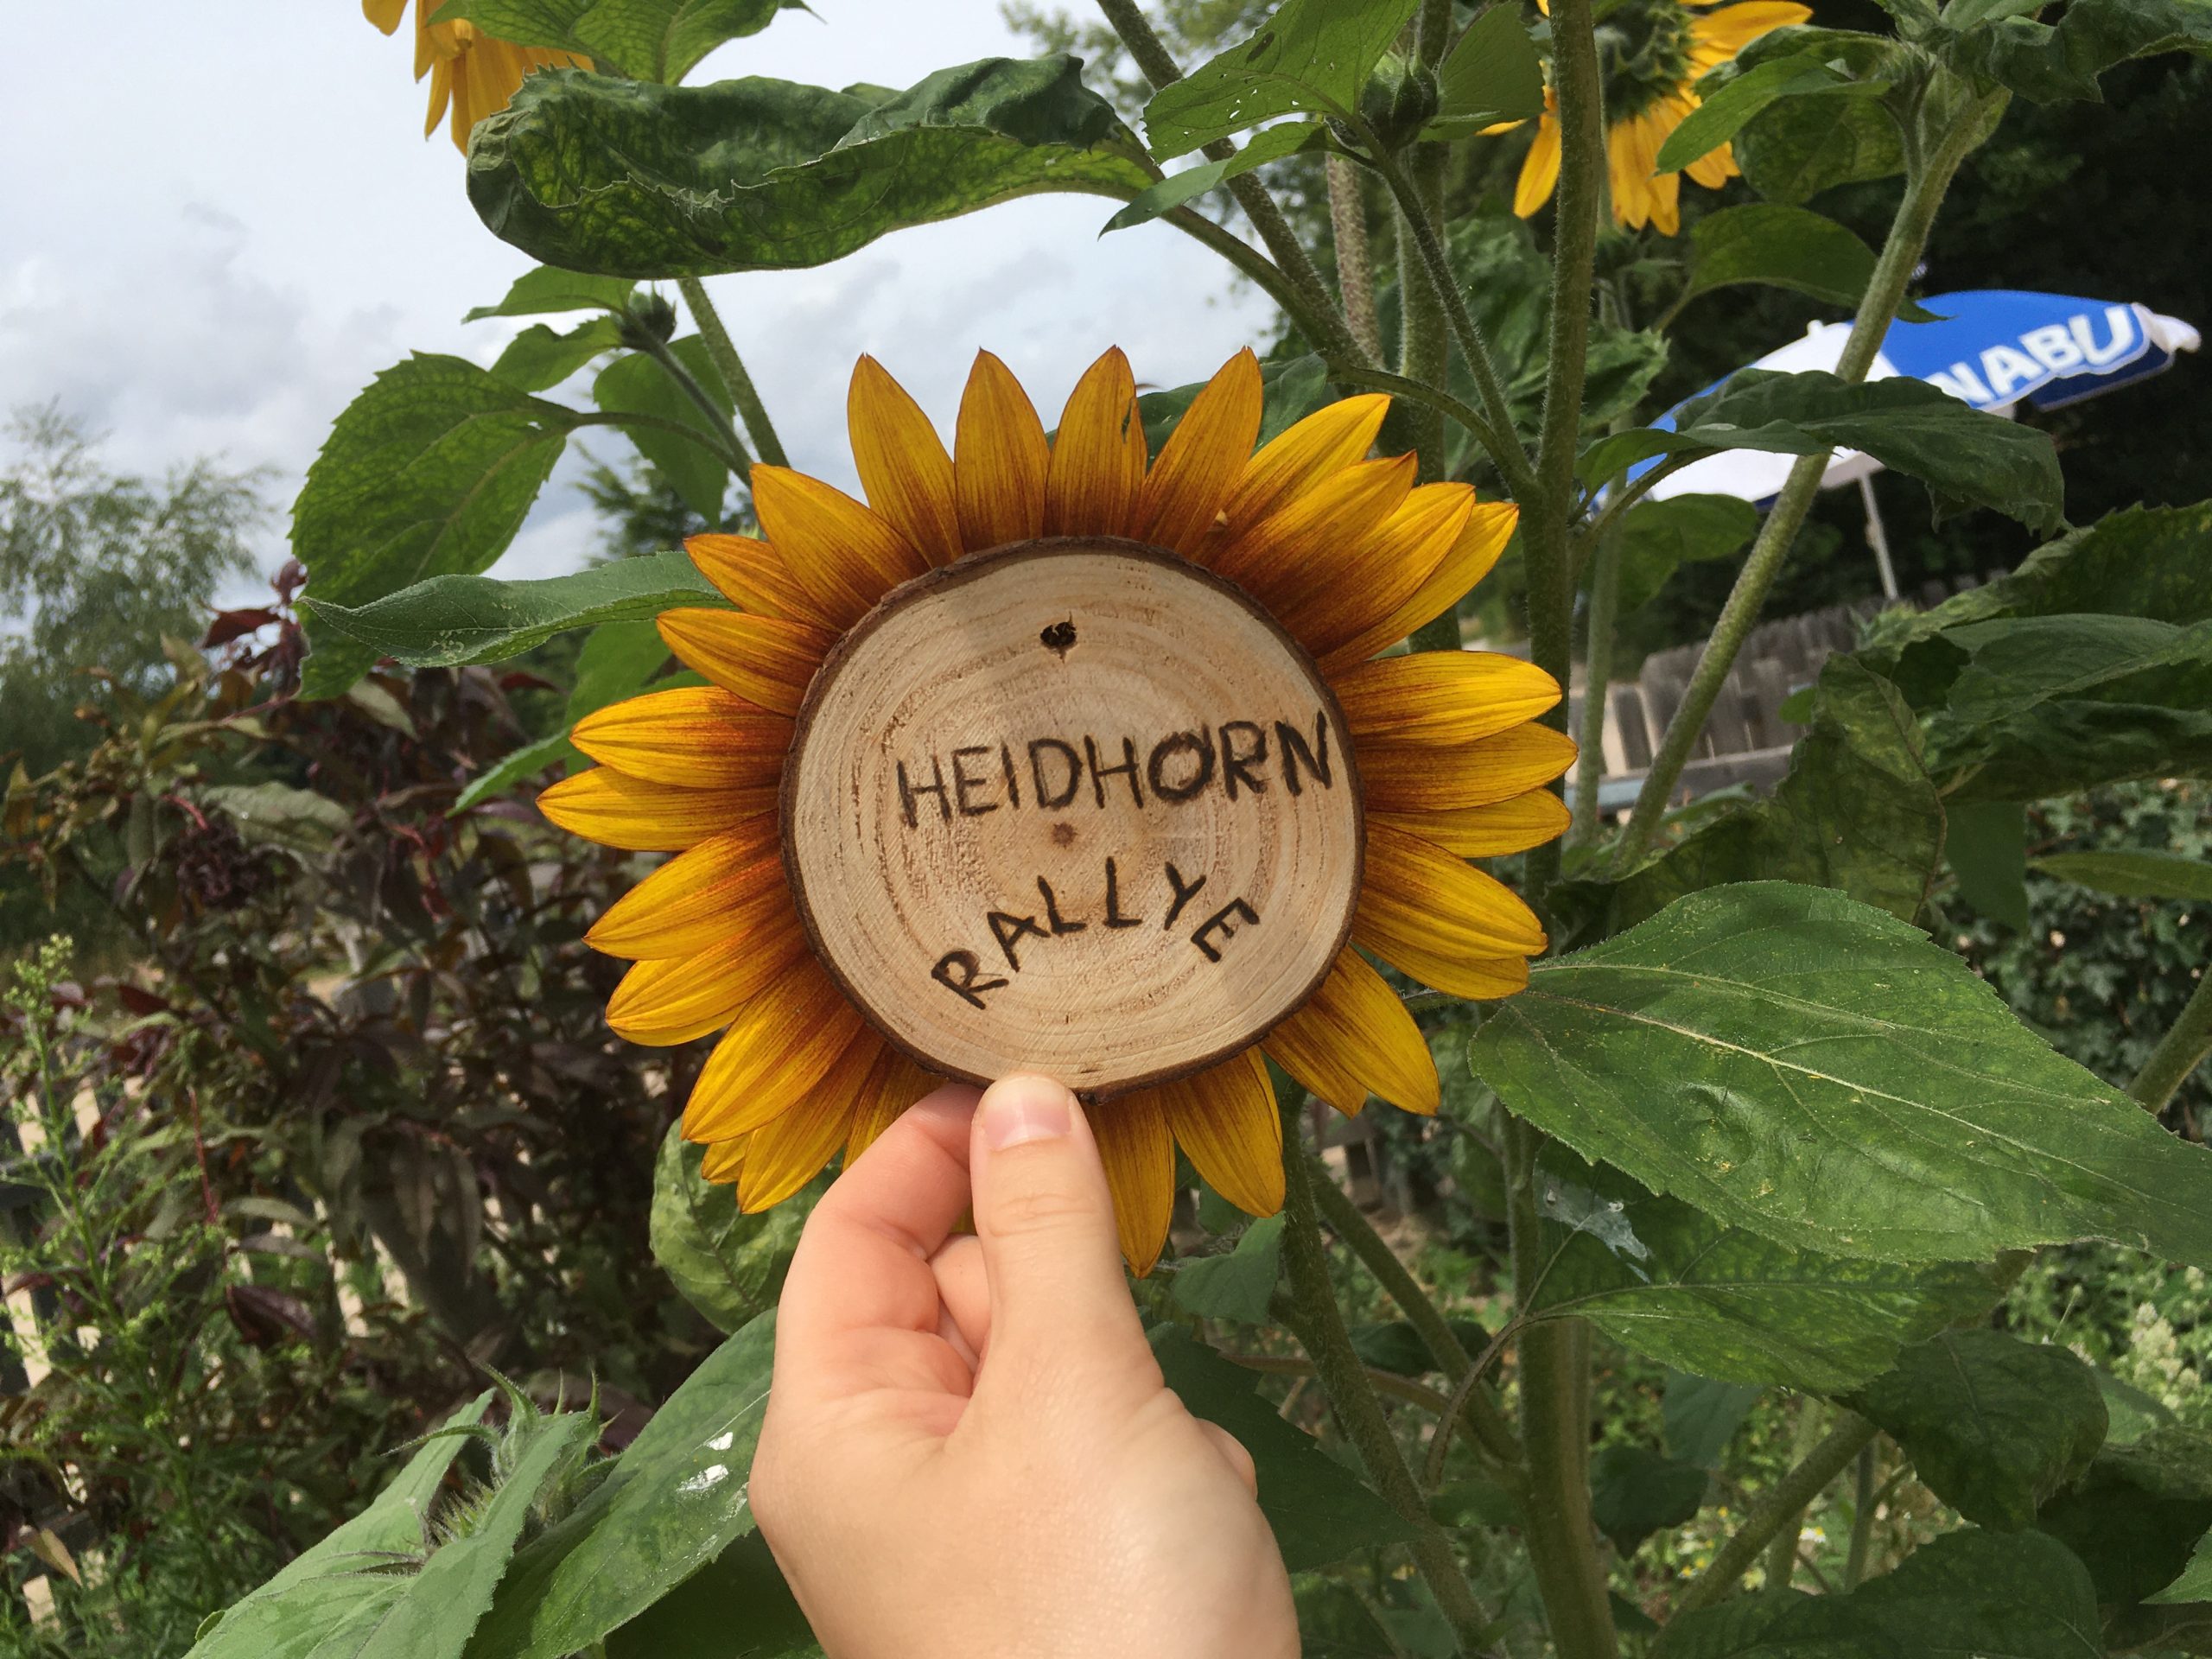 Eine Holzscheibe mit der Aufschrift "Heidhorn Rallye" wird in die Mitte einer Sonnenblumenblüte gehalten.